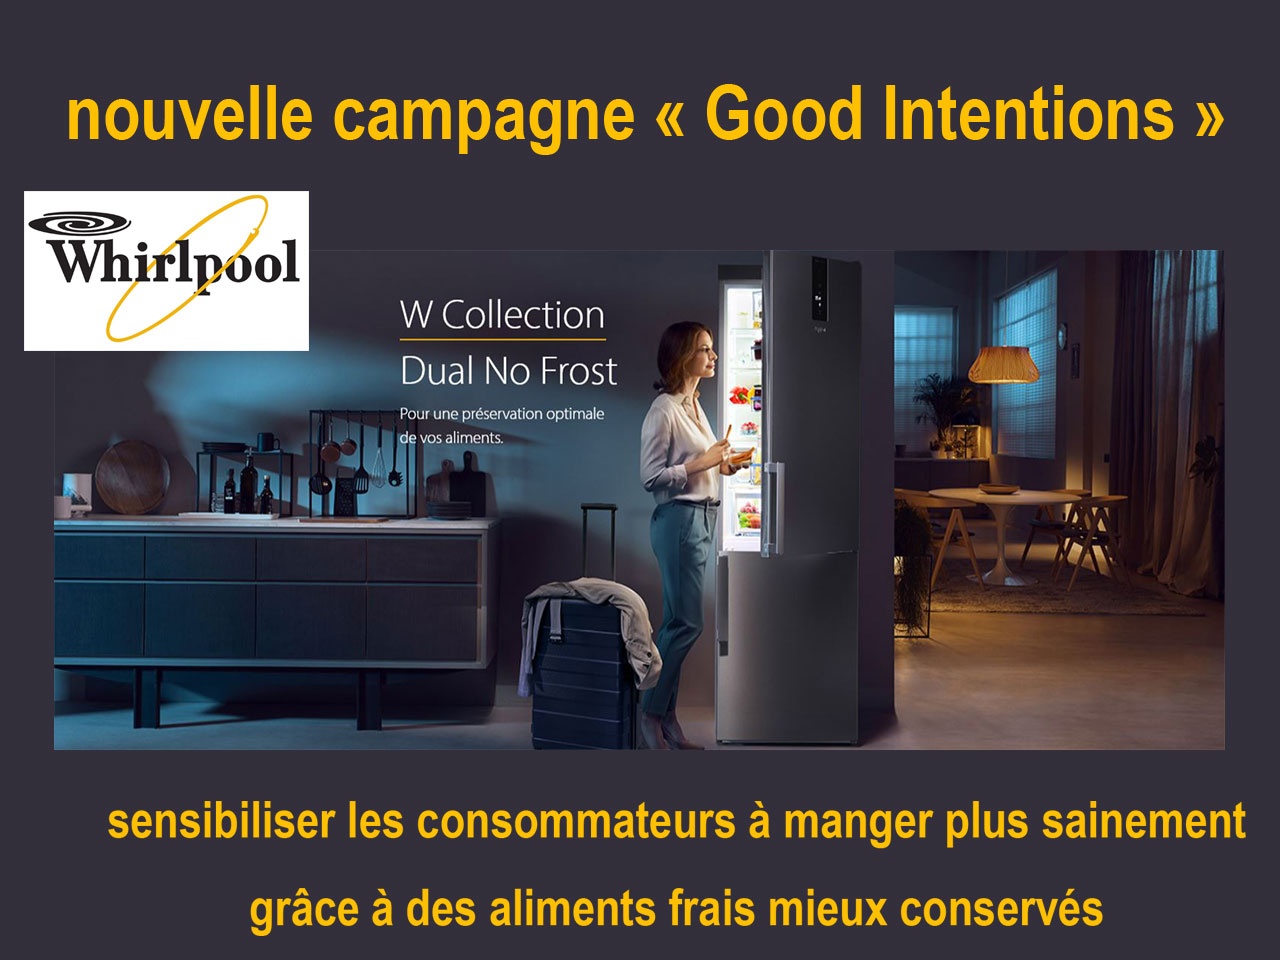 WHIRLPOOL dévoile sa nouvelle campagne de sensibilisation à  manger plus d’aliments frais : « Good Intentions » !